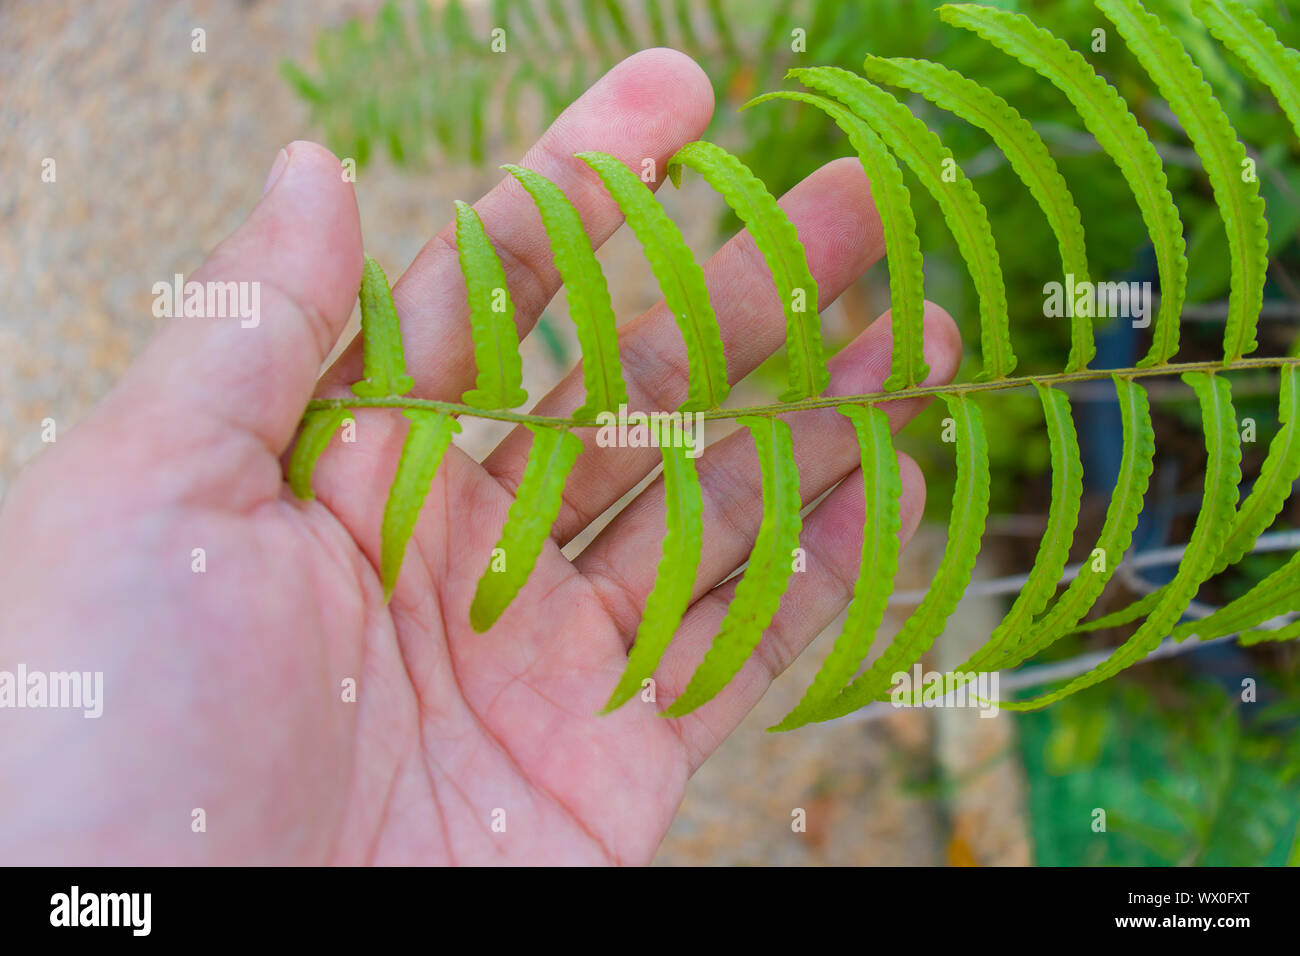 Le mani umane tenendo foglie di felce, vicino fino Verde Verde foglie di felce nelle mani dell'uomo.L'immagine ad alta risoluzione gallery. Foto Stock